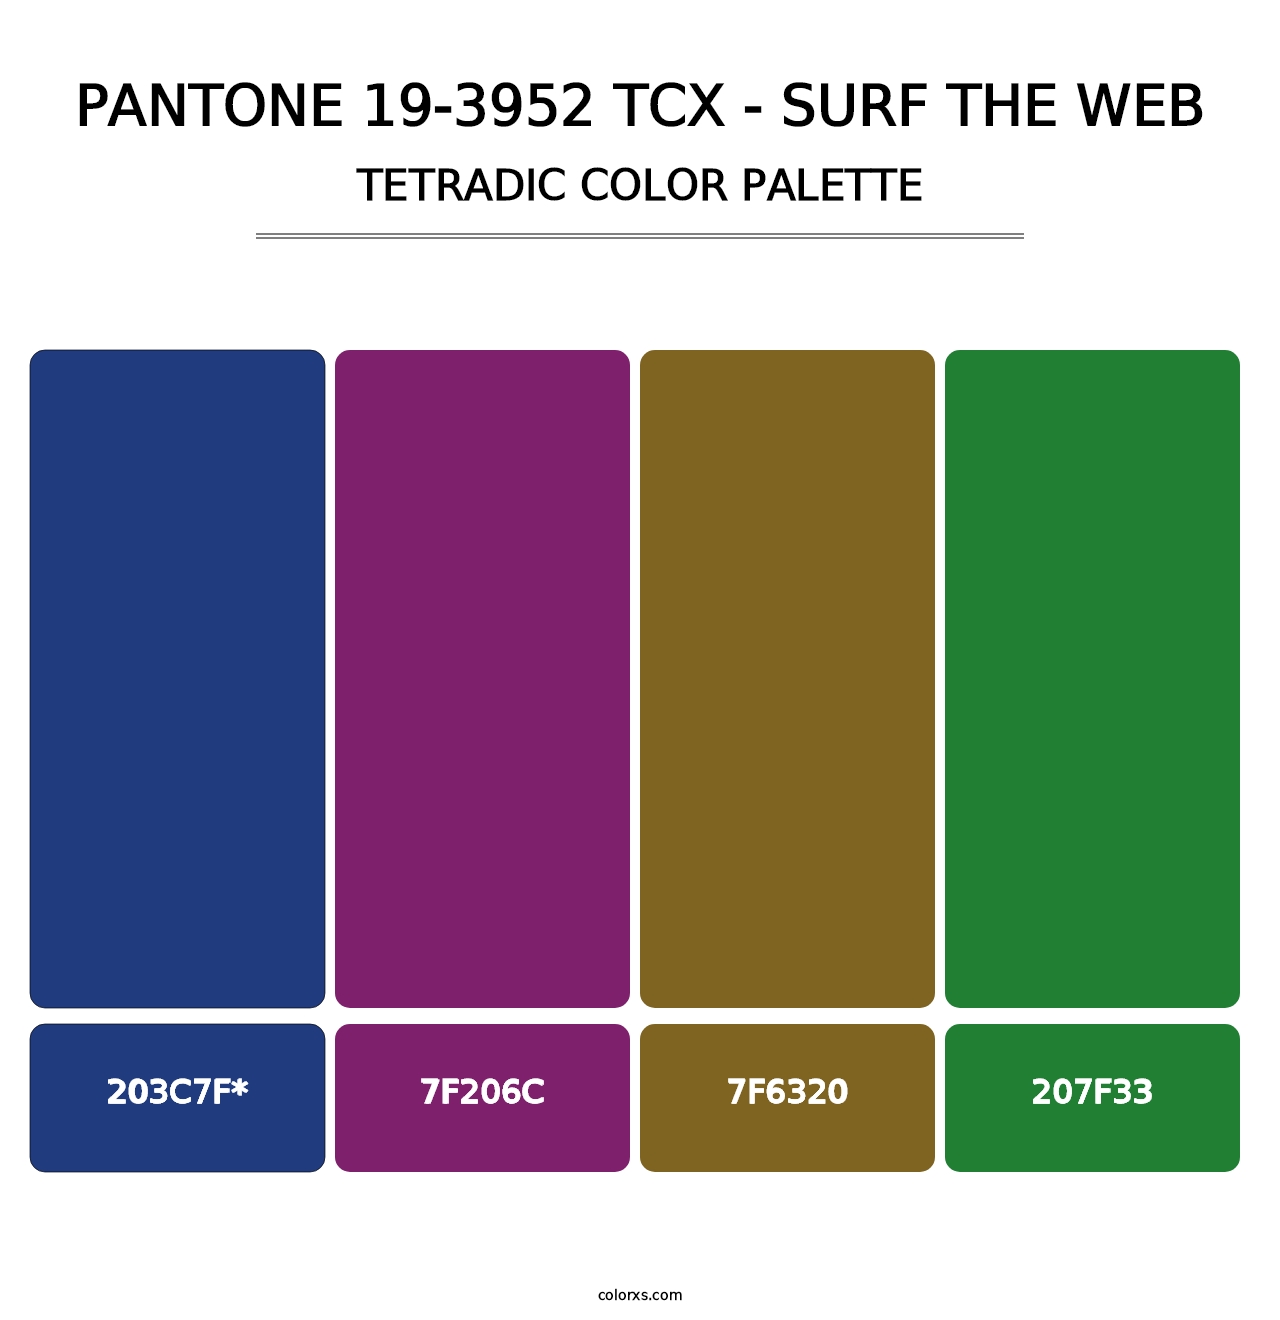 PANTONE 19-3952 TCX - Surf the Web - Tetradic Color Palette